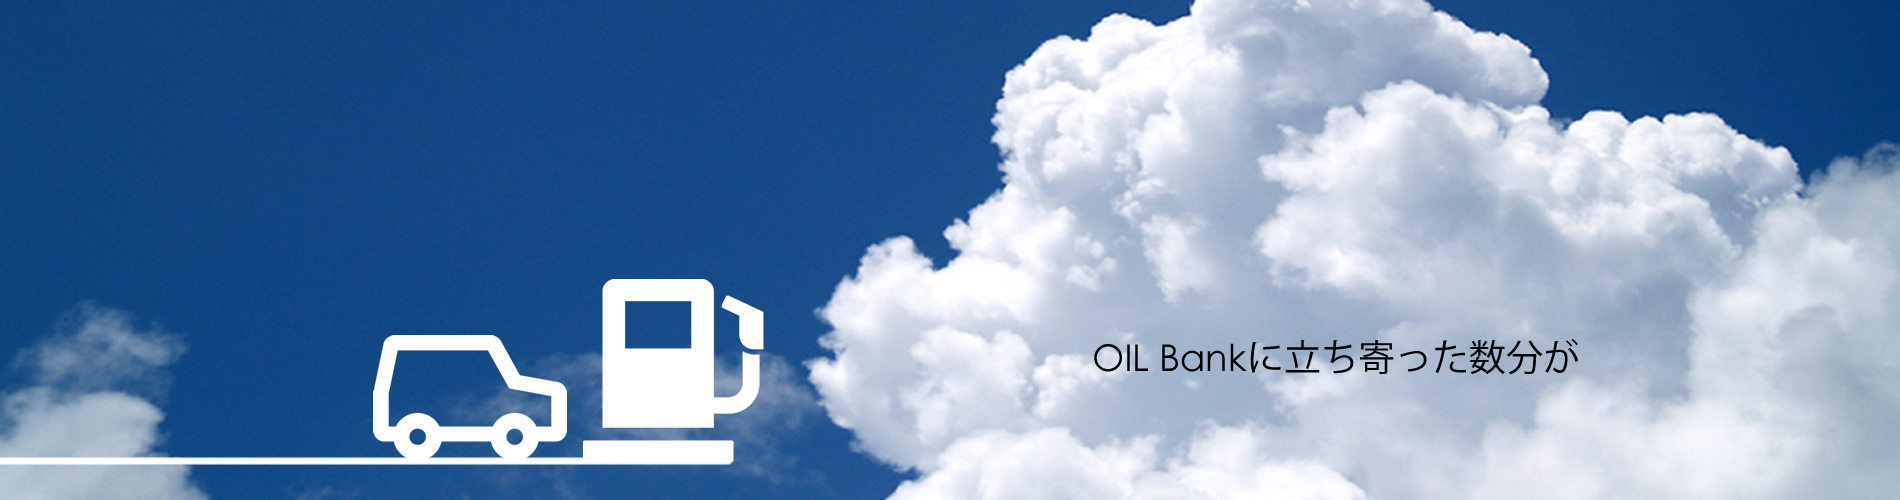 OIL Bank - 株式会社 オイルバンク